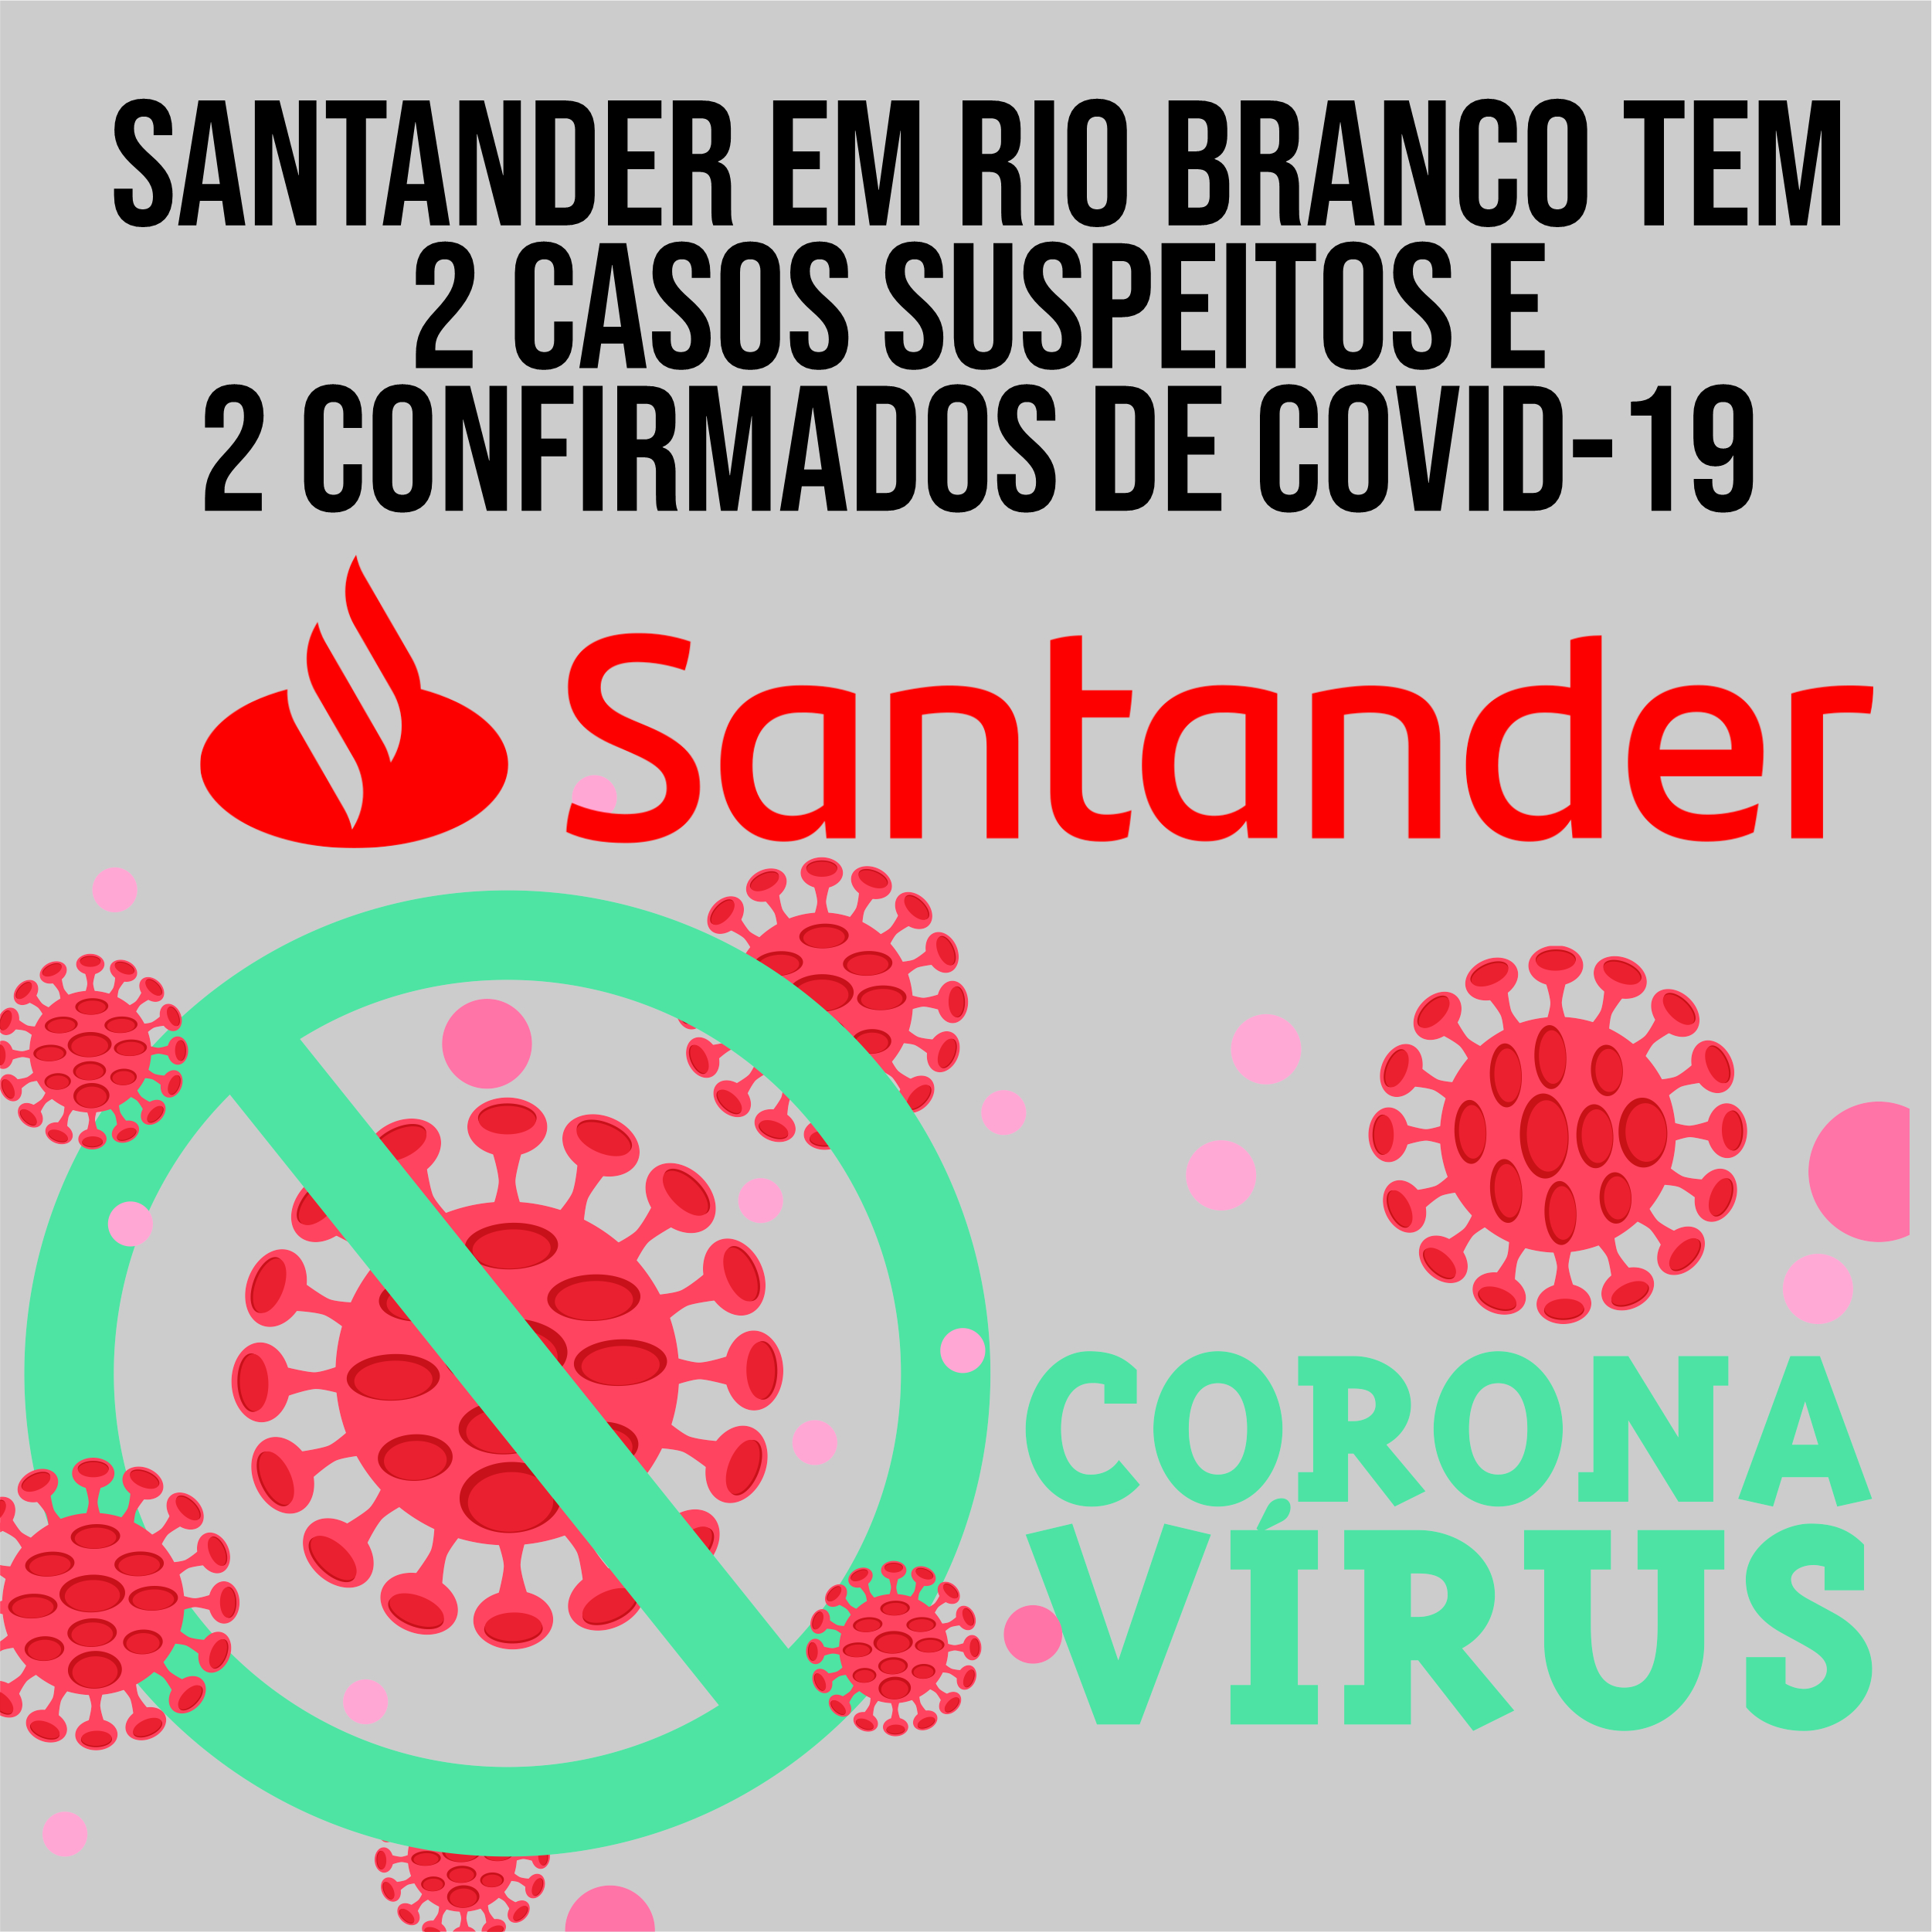 Você está visualizando atualmente Santander em Rio Branco tem 2 casos suspeitos e 2 confirmados de COVID-19